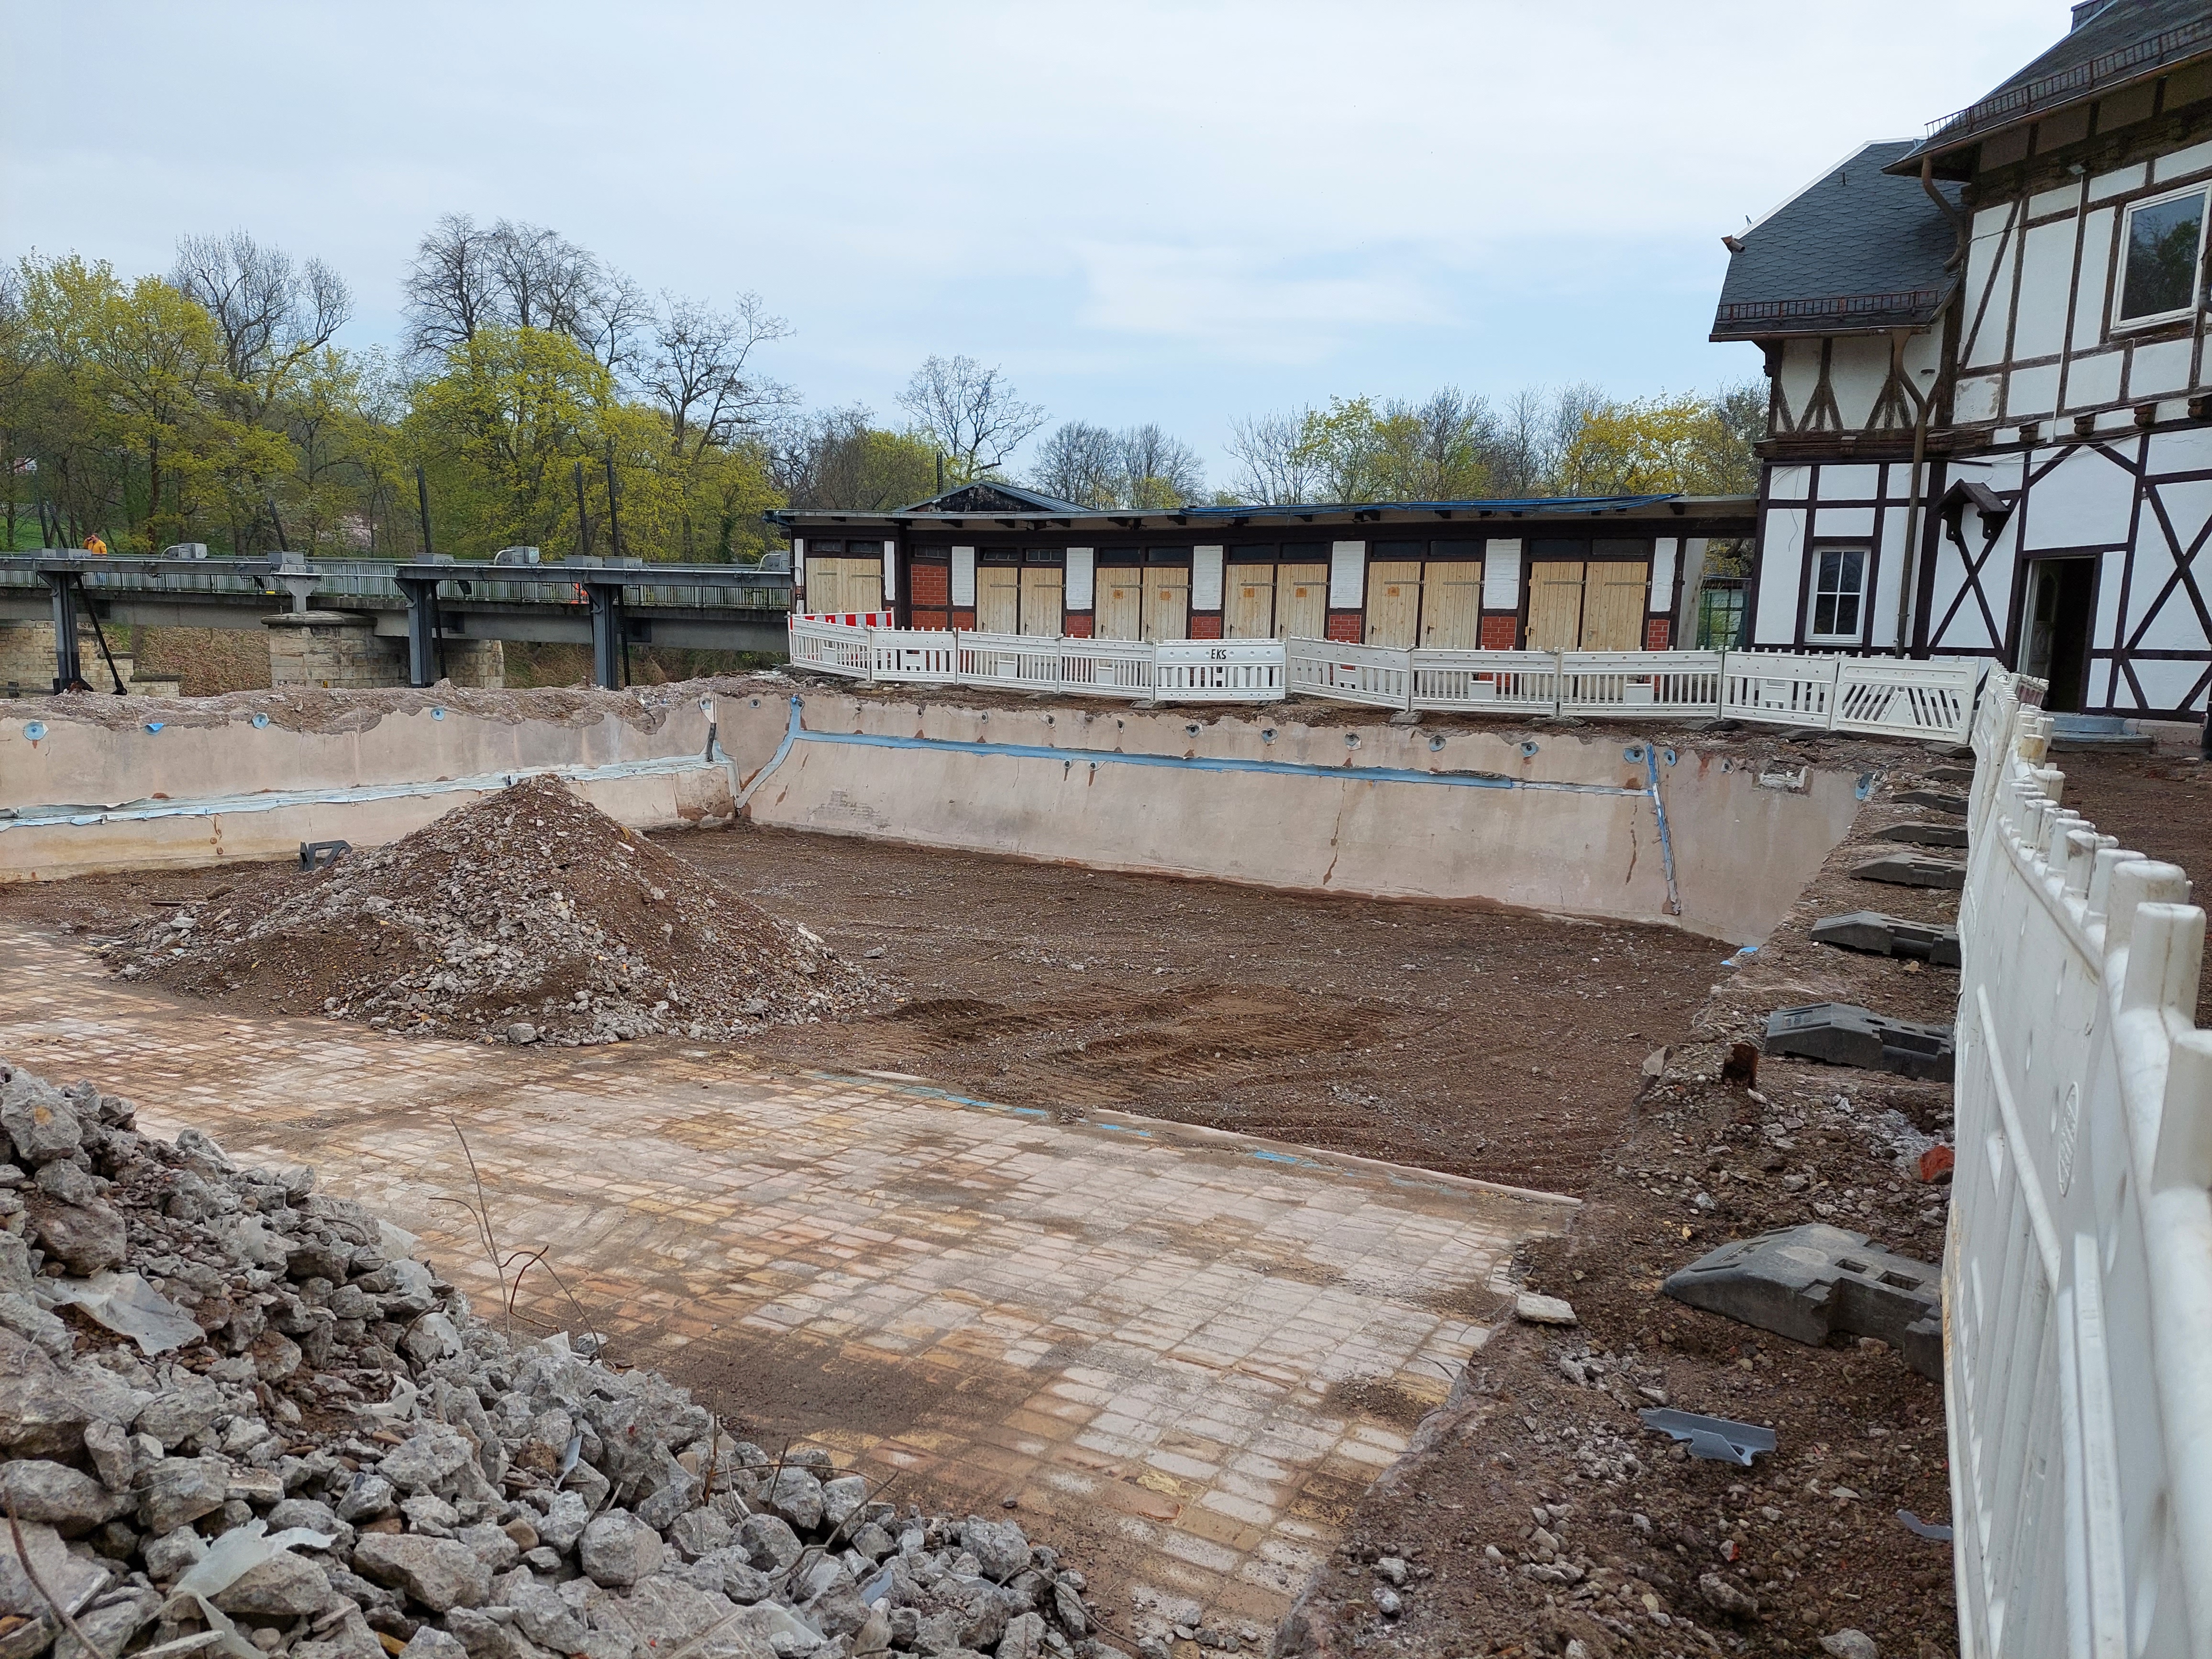 Das Bild zeigt eine Baustelle in einem Freibad. Das Becken wurde entfernt und wird neu angelegt.